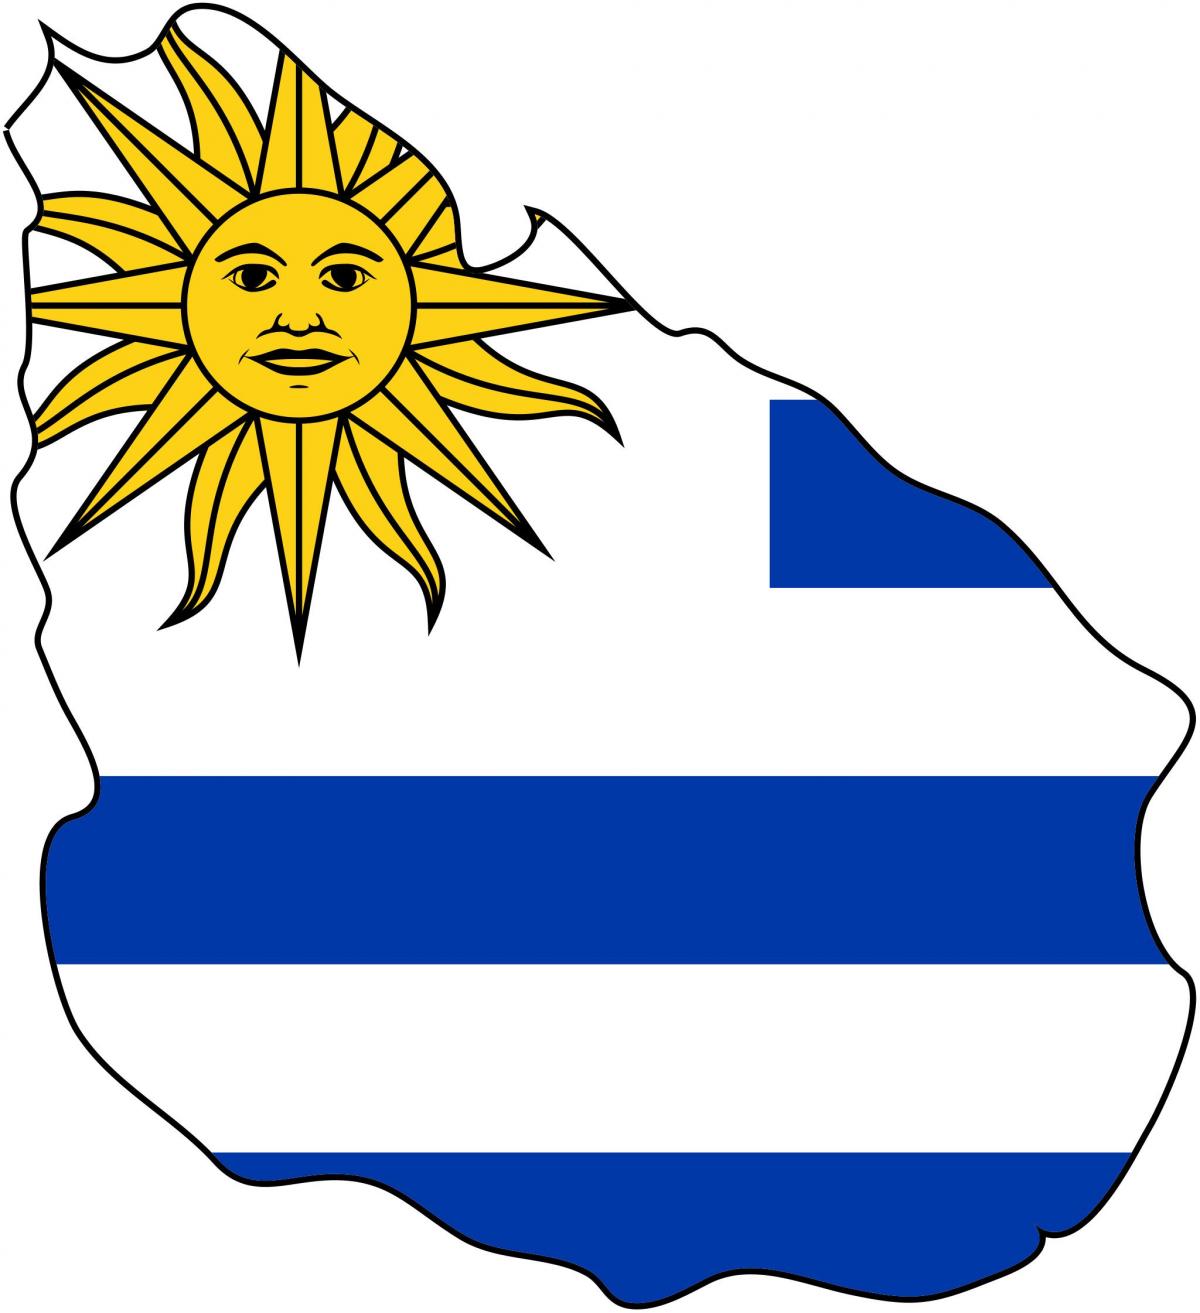 מפה של אורוגוואי הדגל